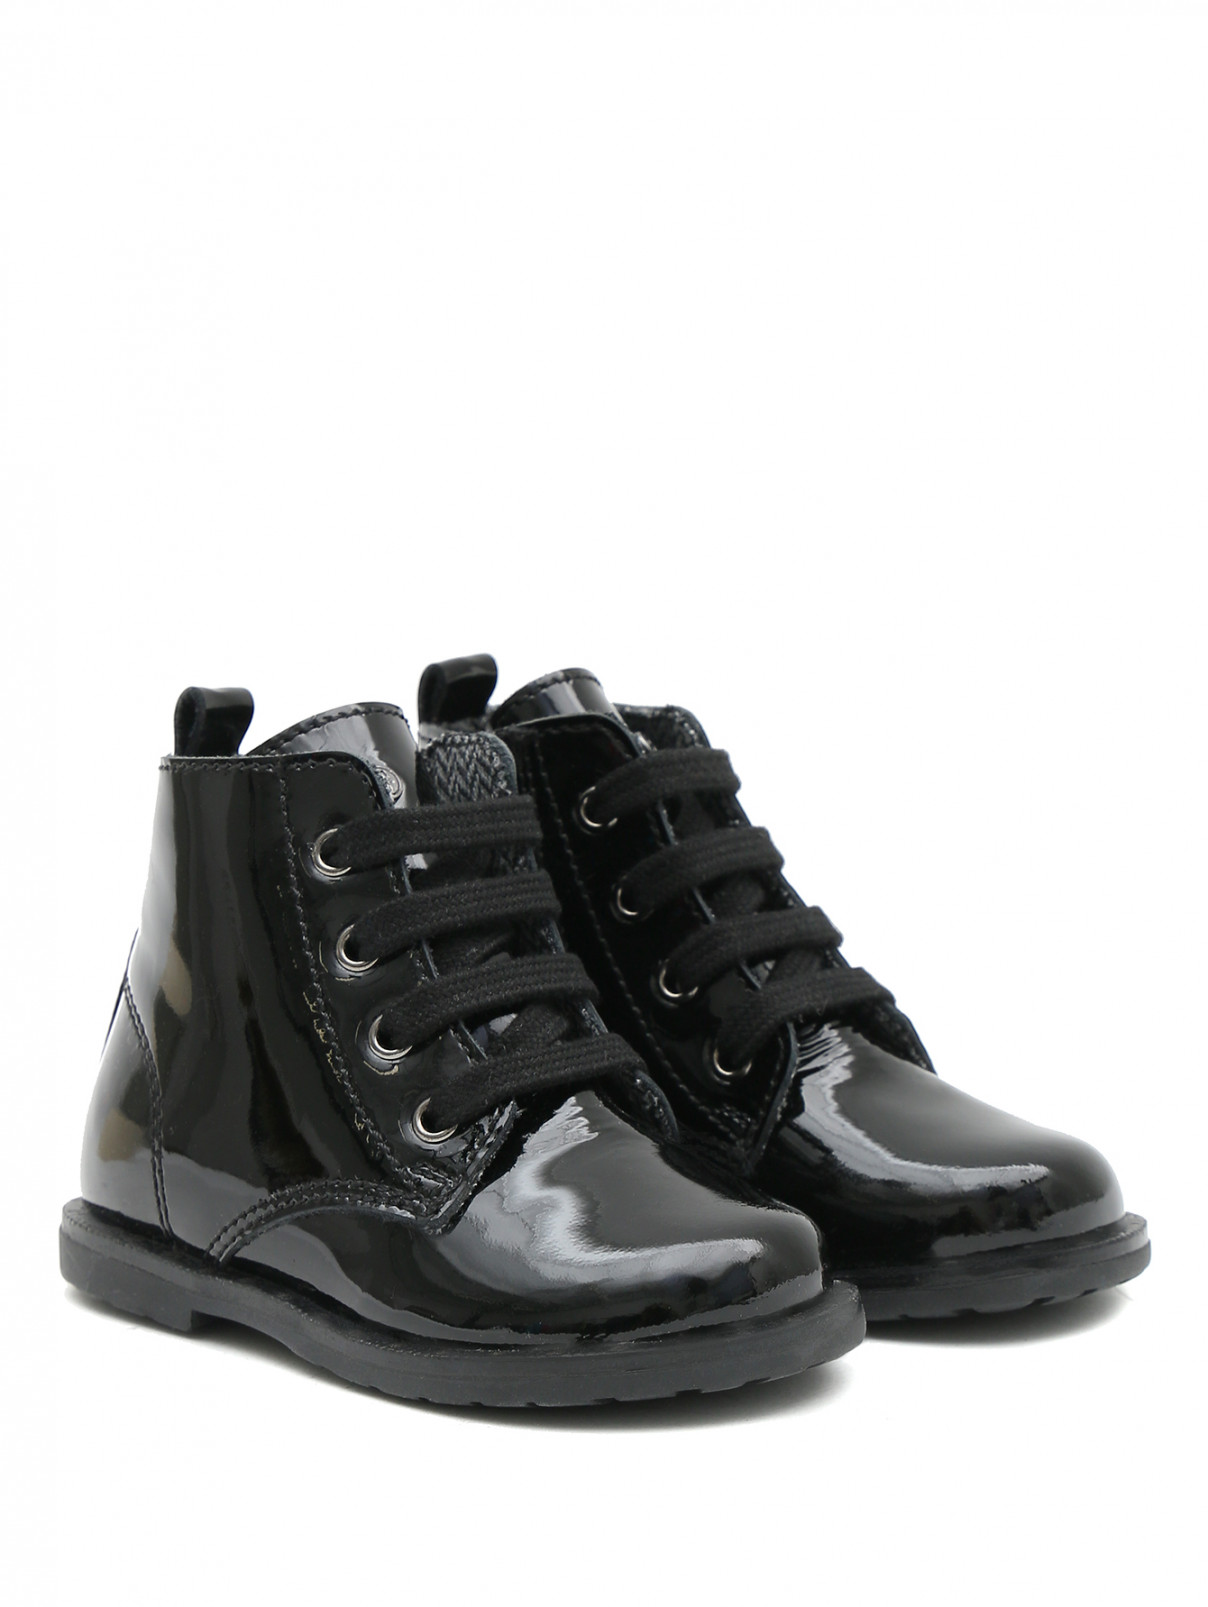 Ботинки из кожи на шнурках FALCOTTO  –  Общий вид  – Цвет:  Черный